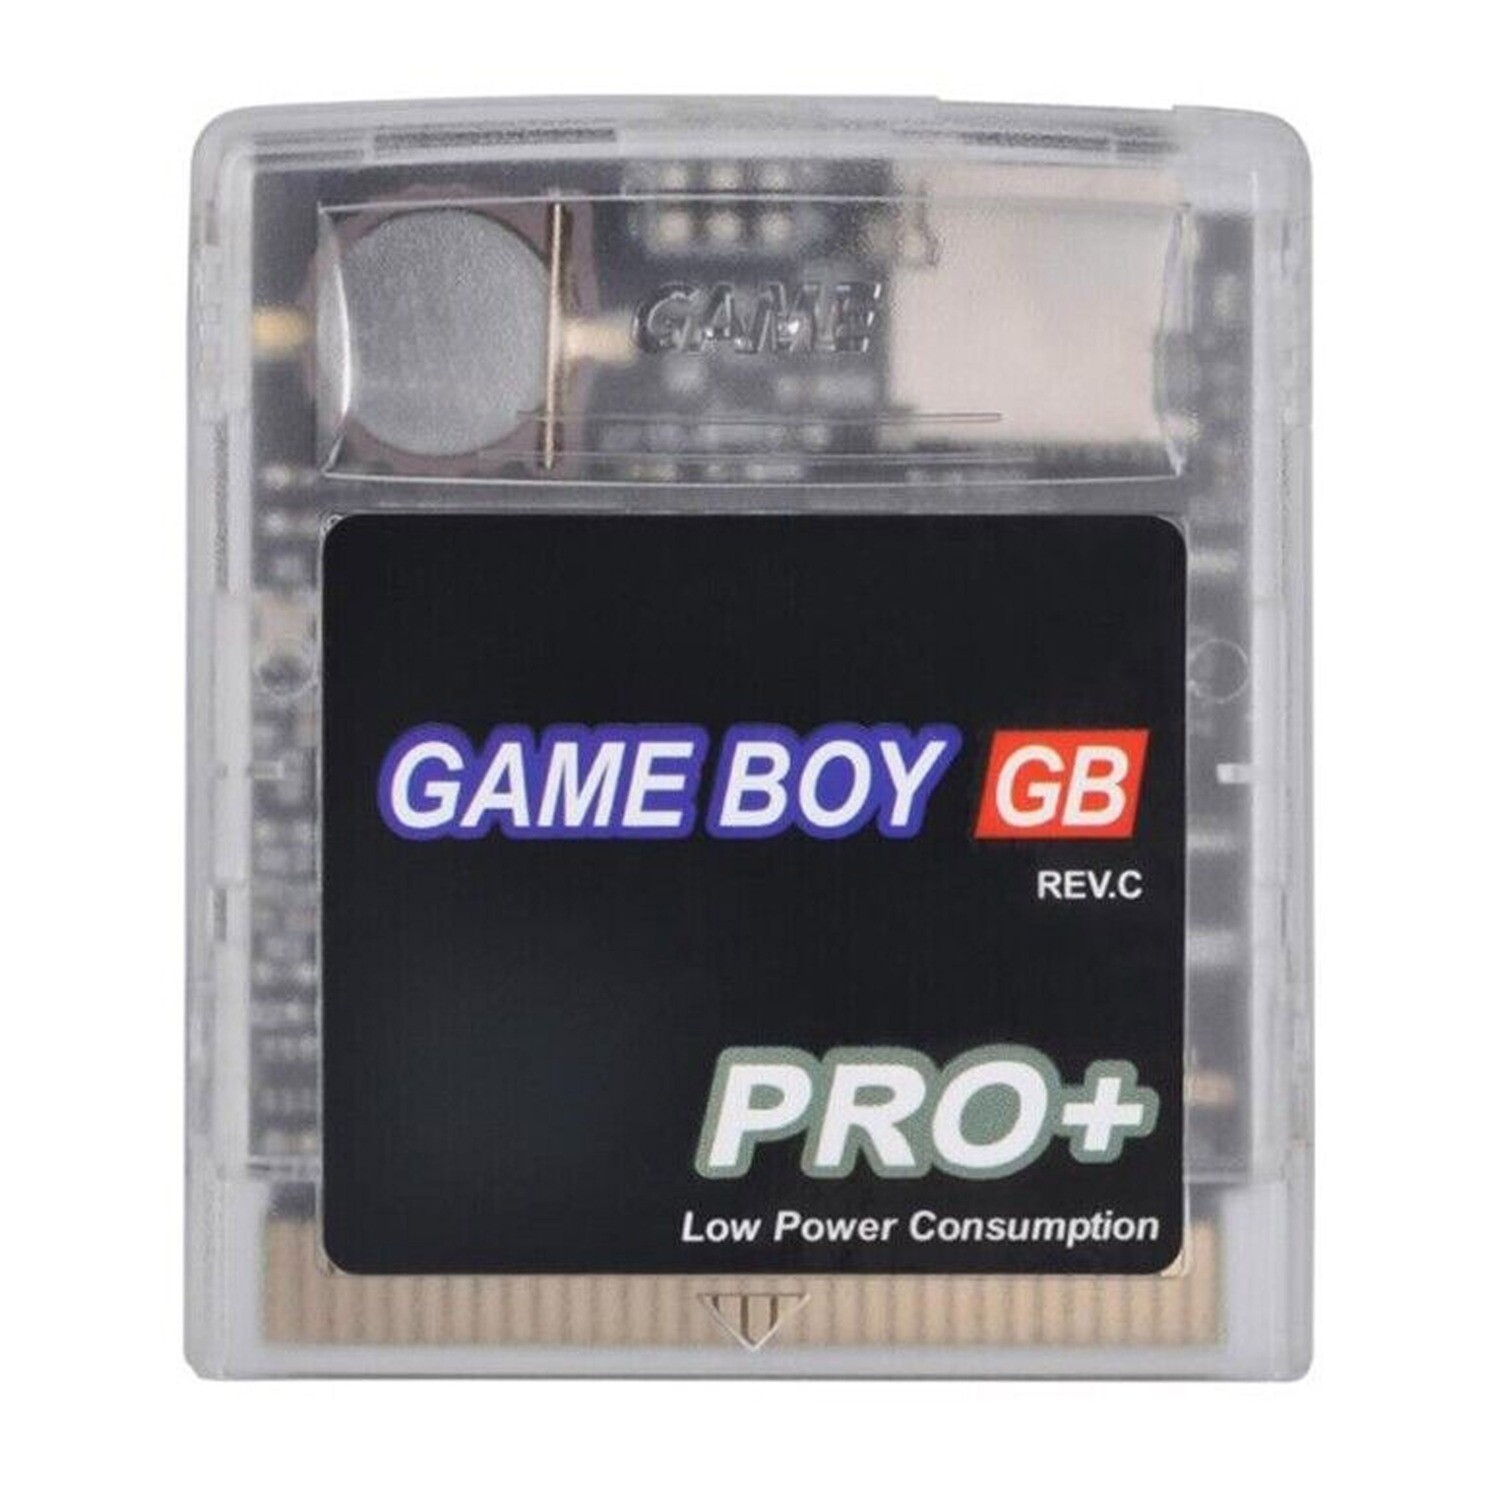 Game Boy Pro+ Flash Cartridge